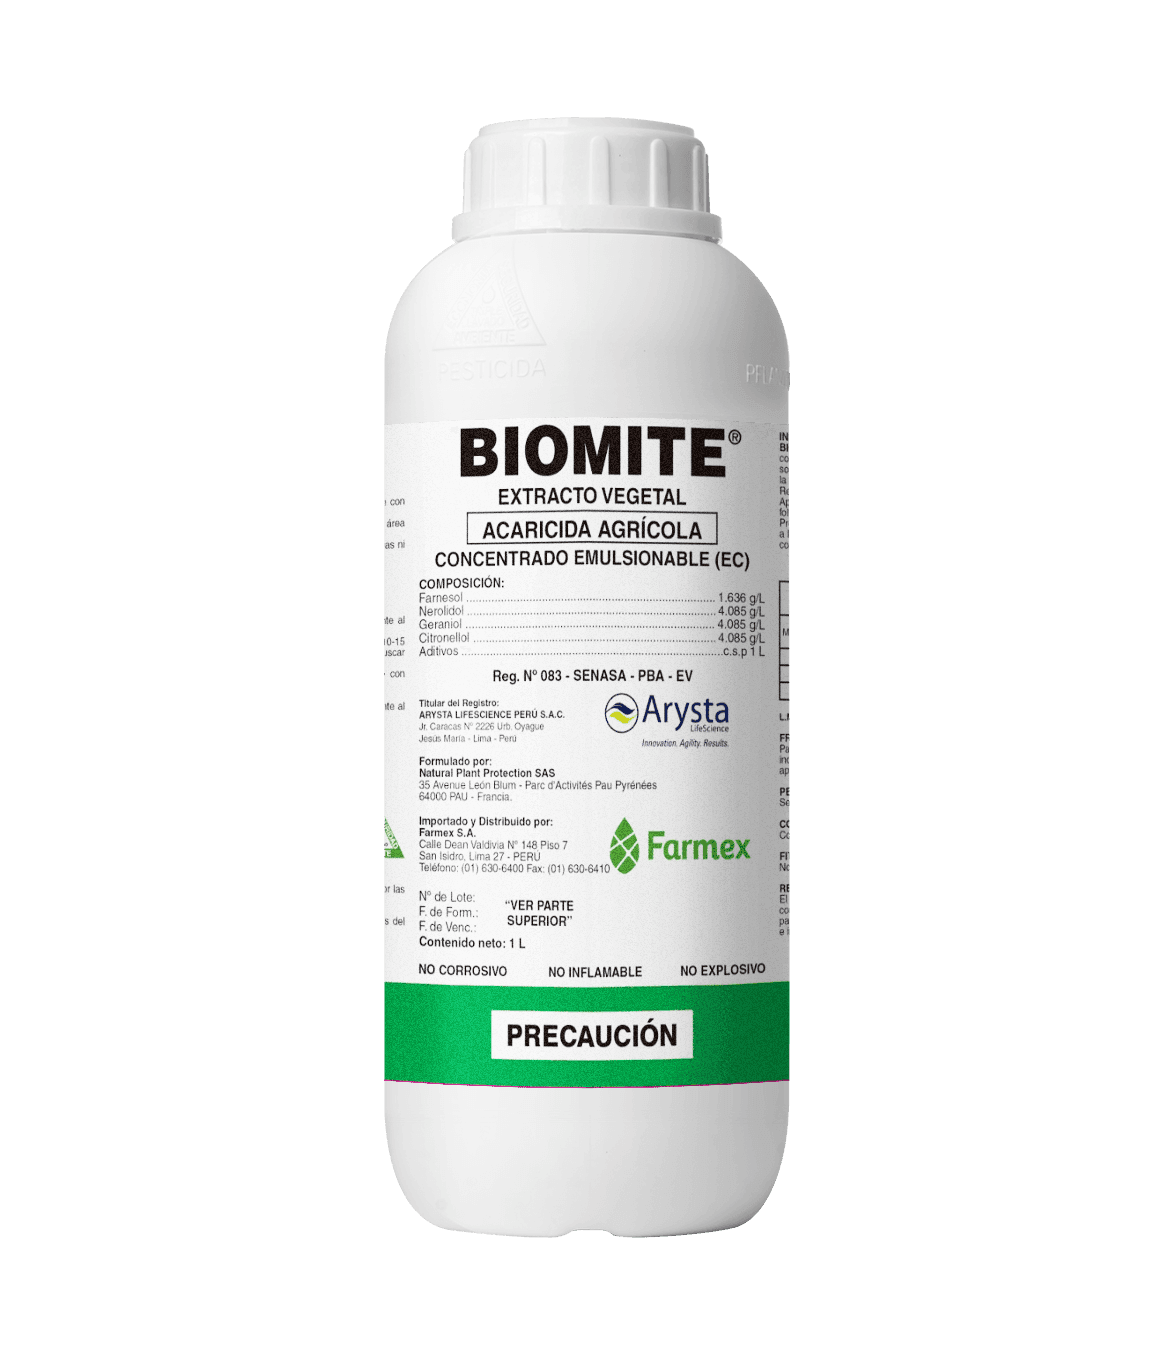 Biomite